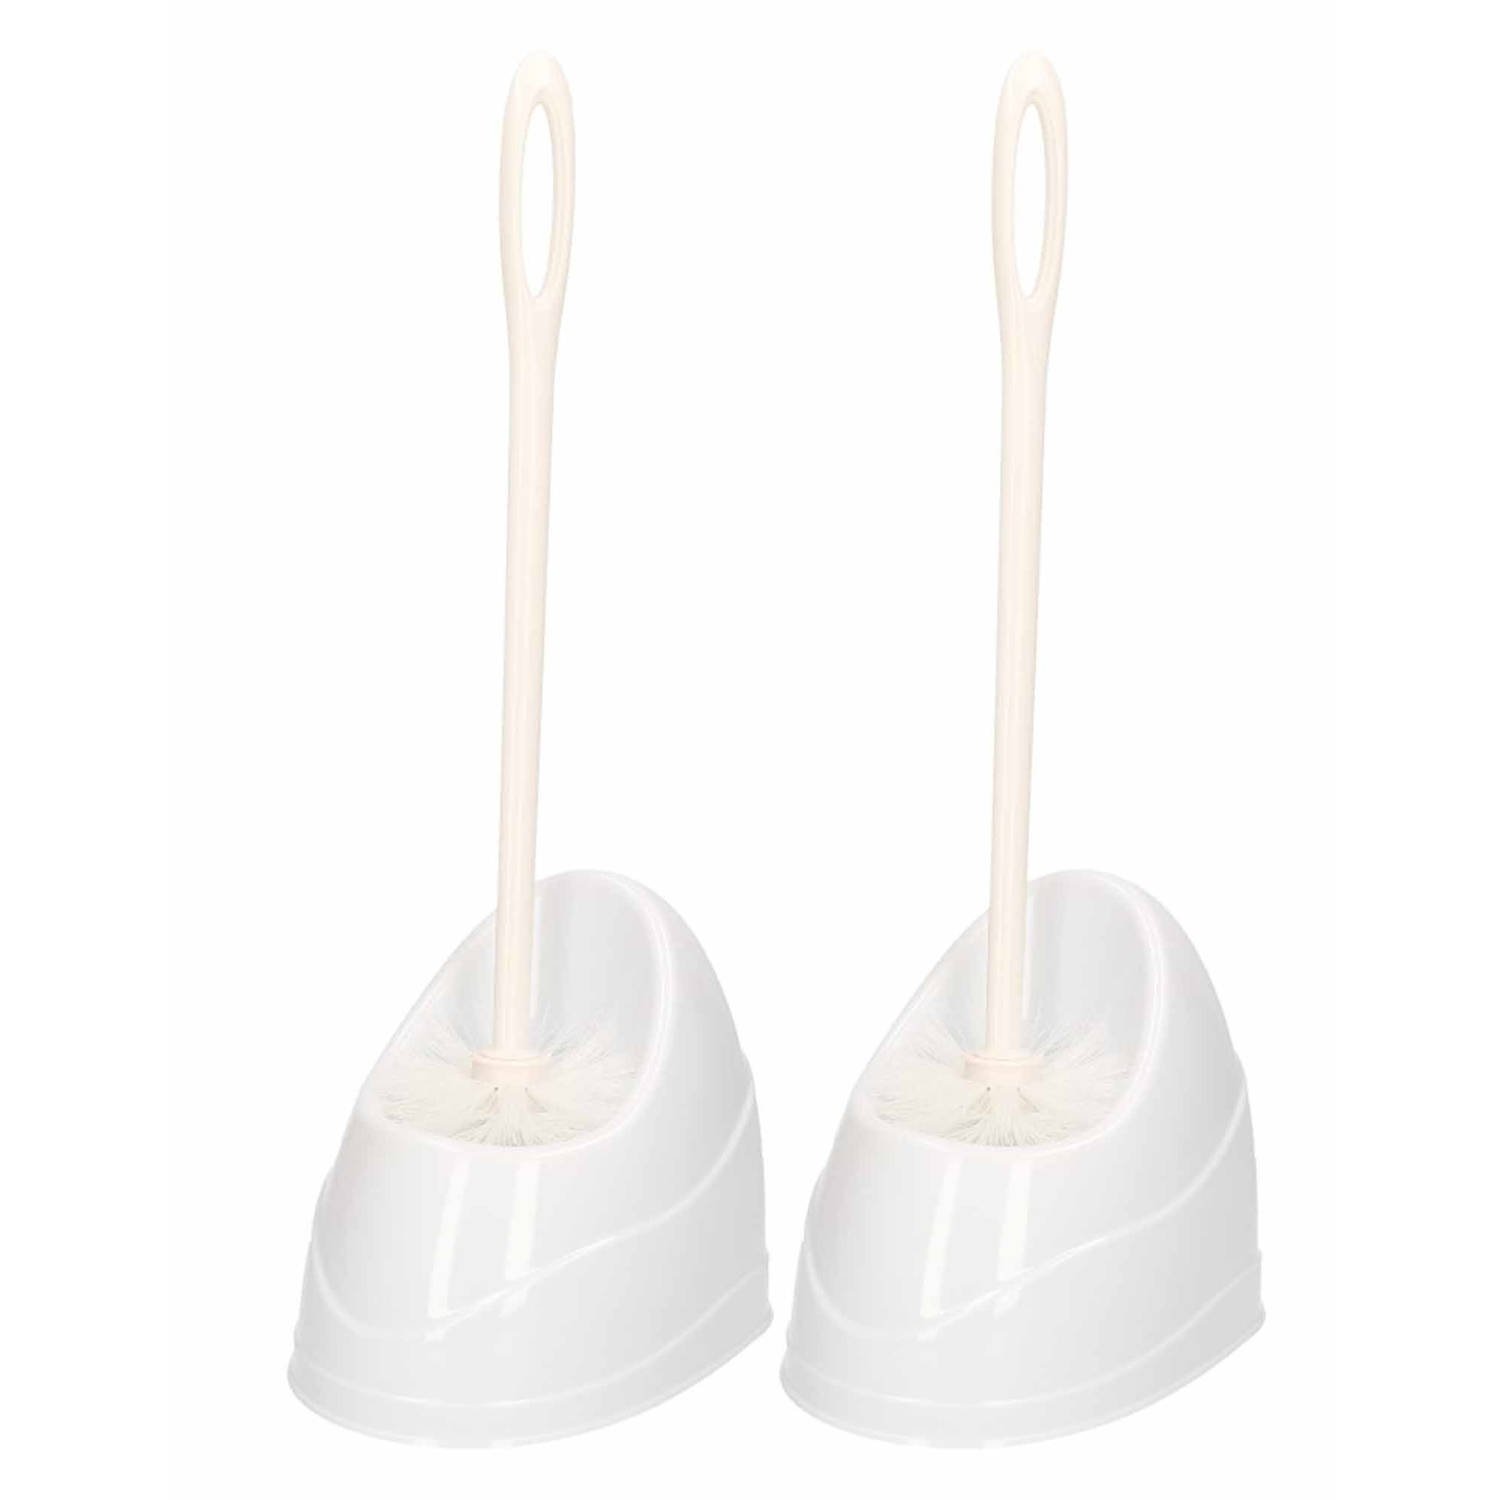 2x Witte toiletborstels/wc-borstels met houder kunststof 45 cm - Toiletborstels